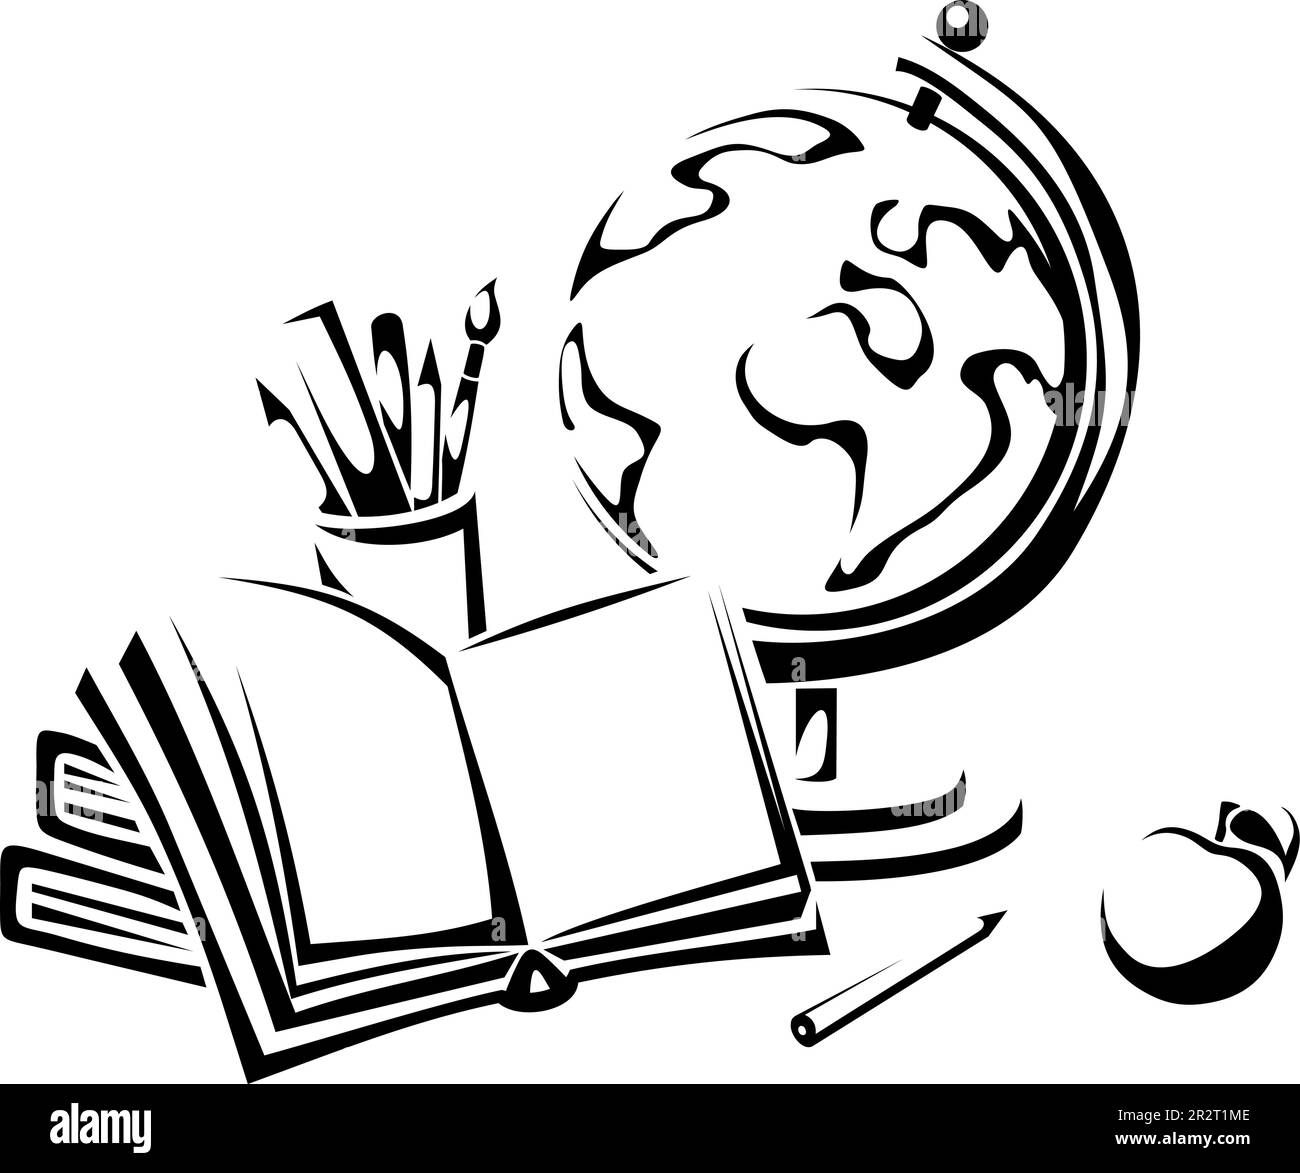 Globe, livres et papeterie. Illustration vectorielle noir et blanc d'un globe, de livres, de stylos et d'une pomme sur fond blanc. Symbole éducation Illustration de Vecteur